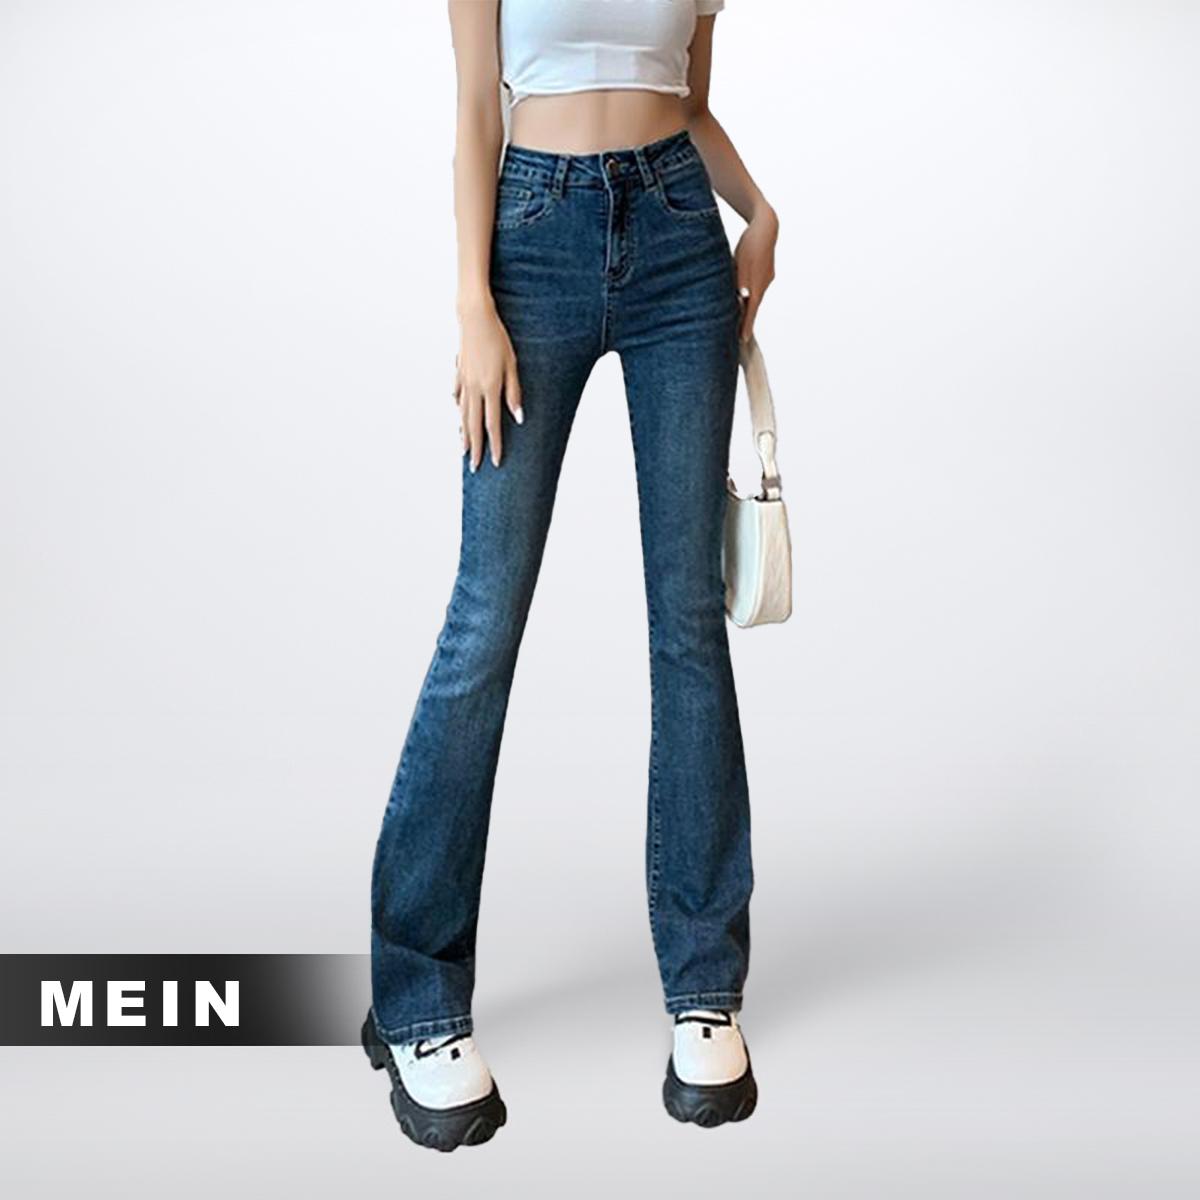 [MEIN] 7799 Jeans Highwaist Wanita Jeans Wanita Terbaru  Hitam Katun Denim Celana Panjang